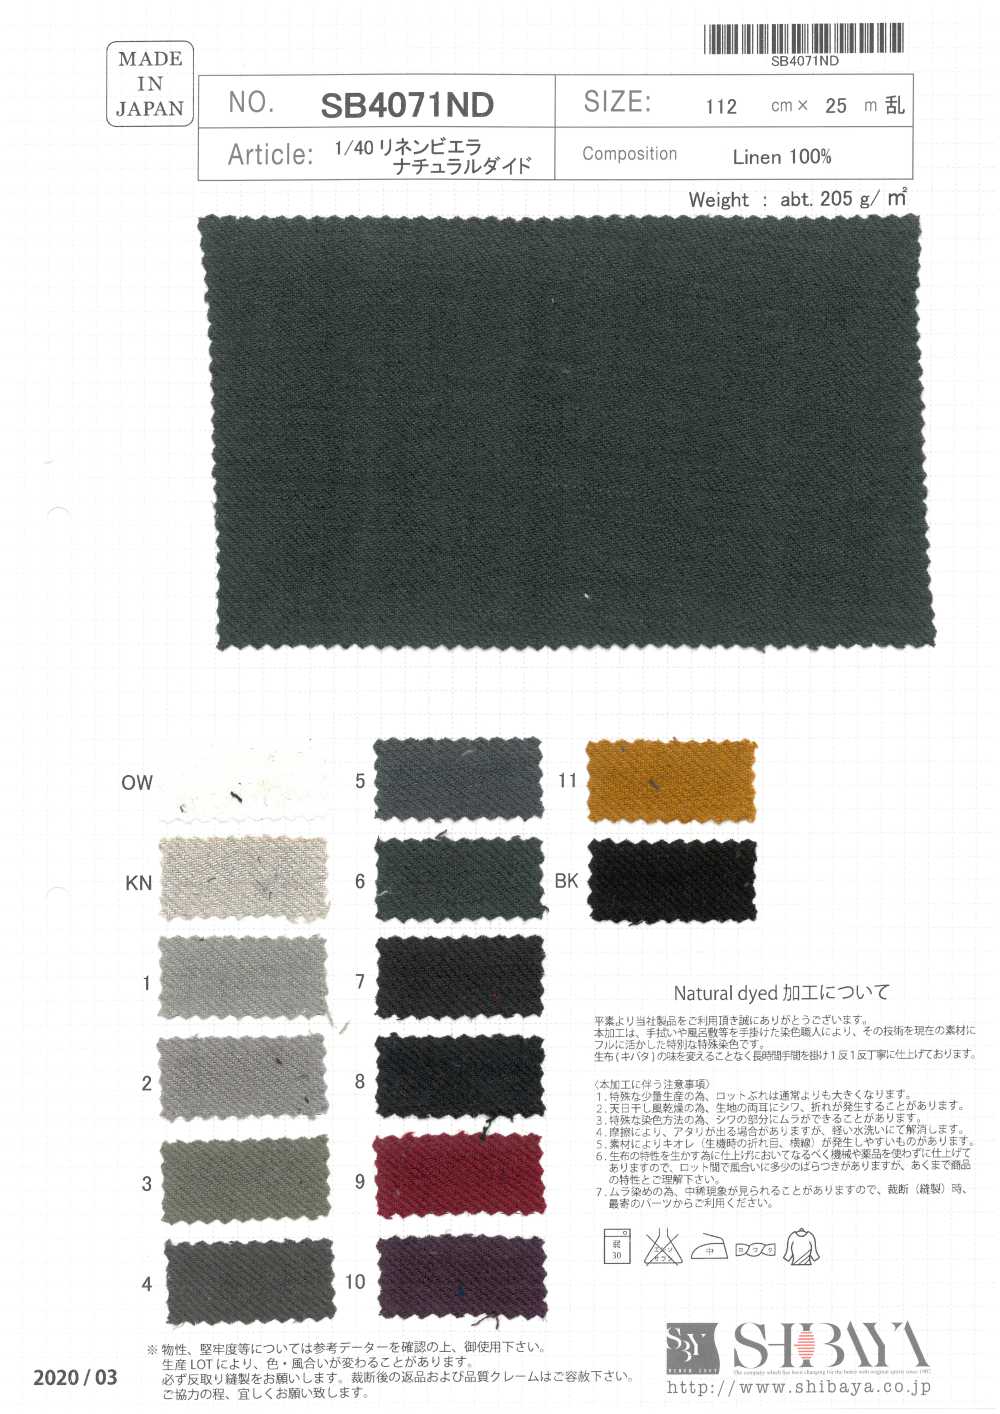 SB4071ND 1/40 Viyella Natural Dyed[Textile / Fabric] SHIBAYA